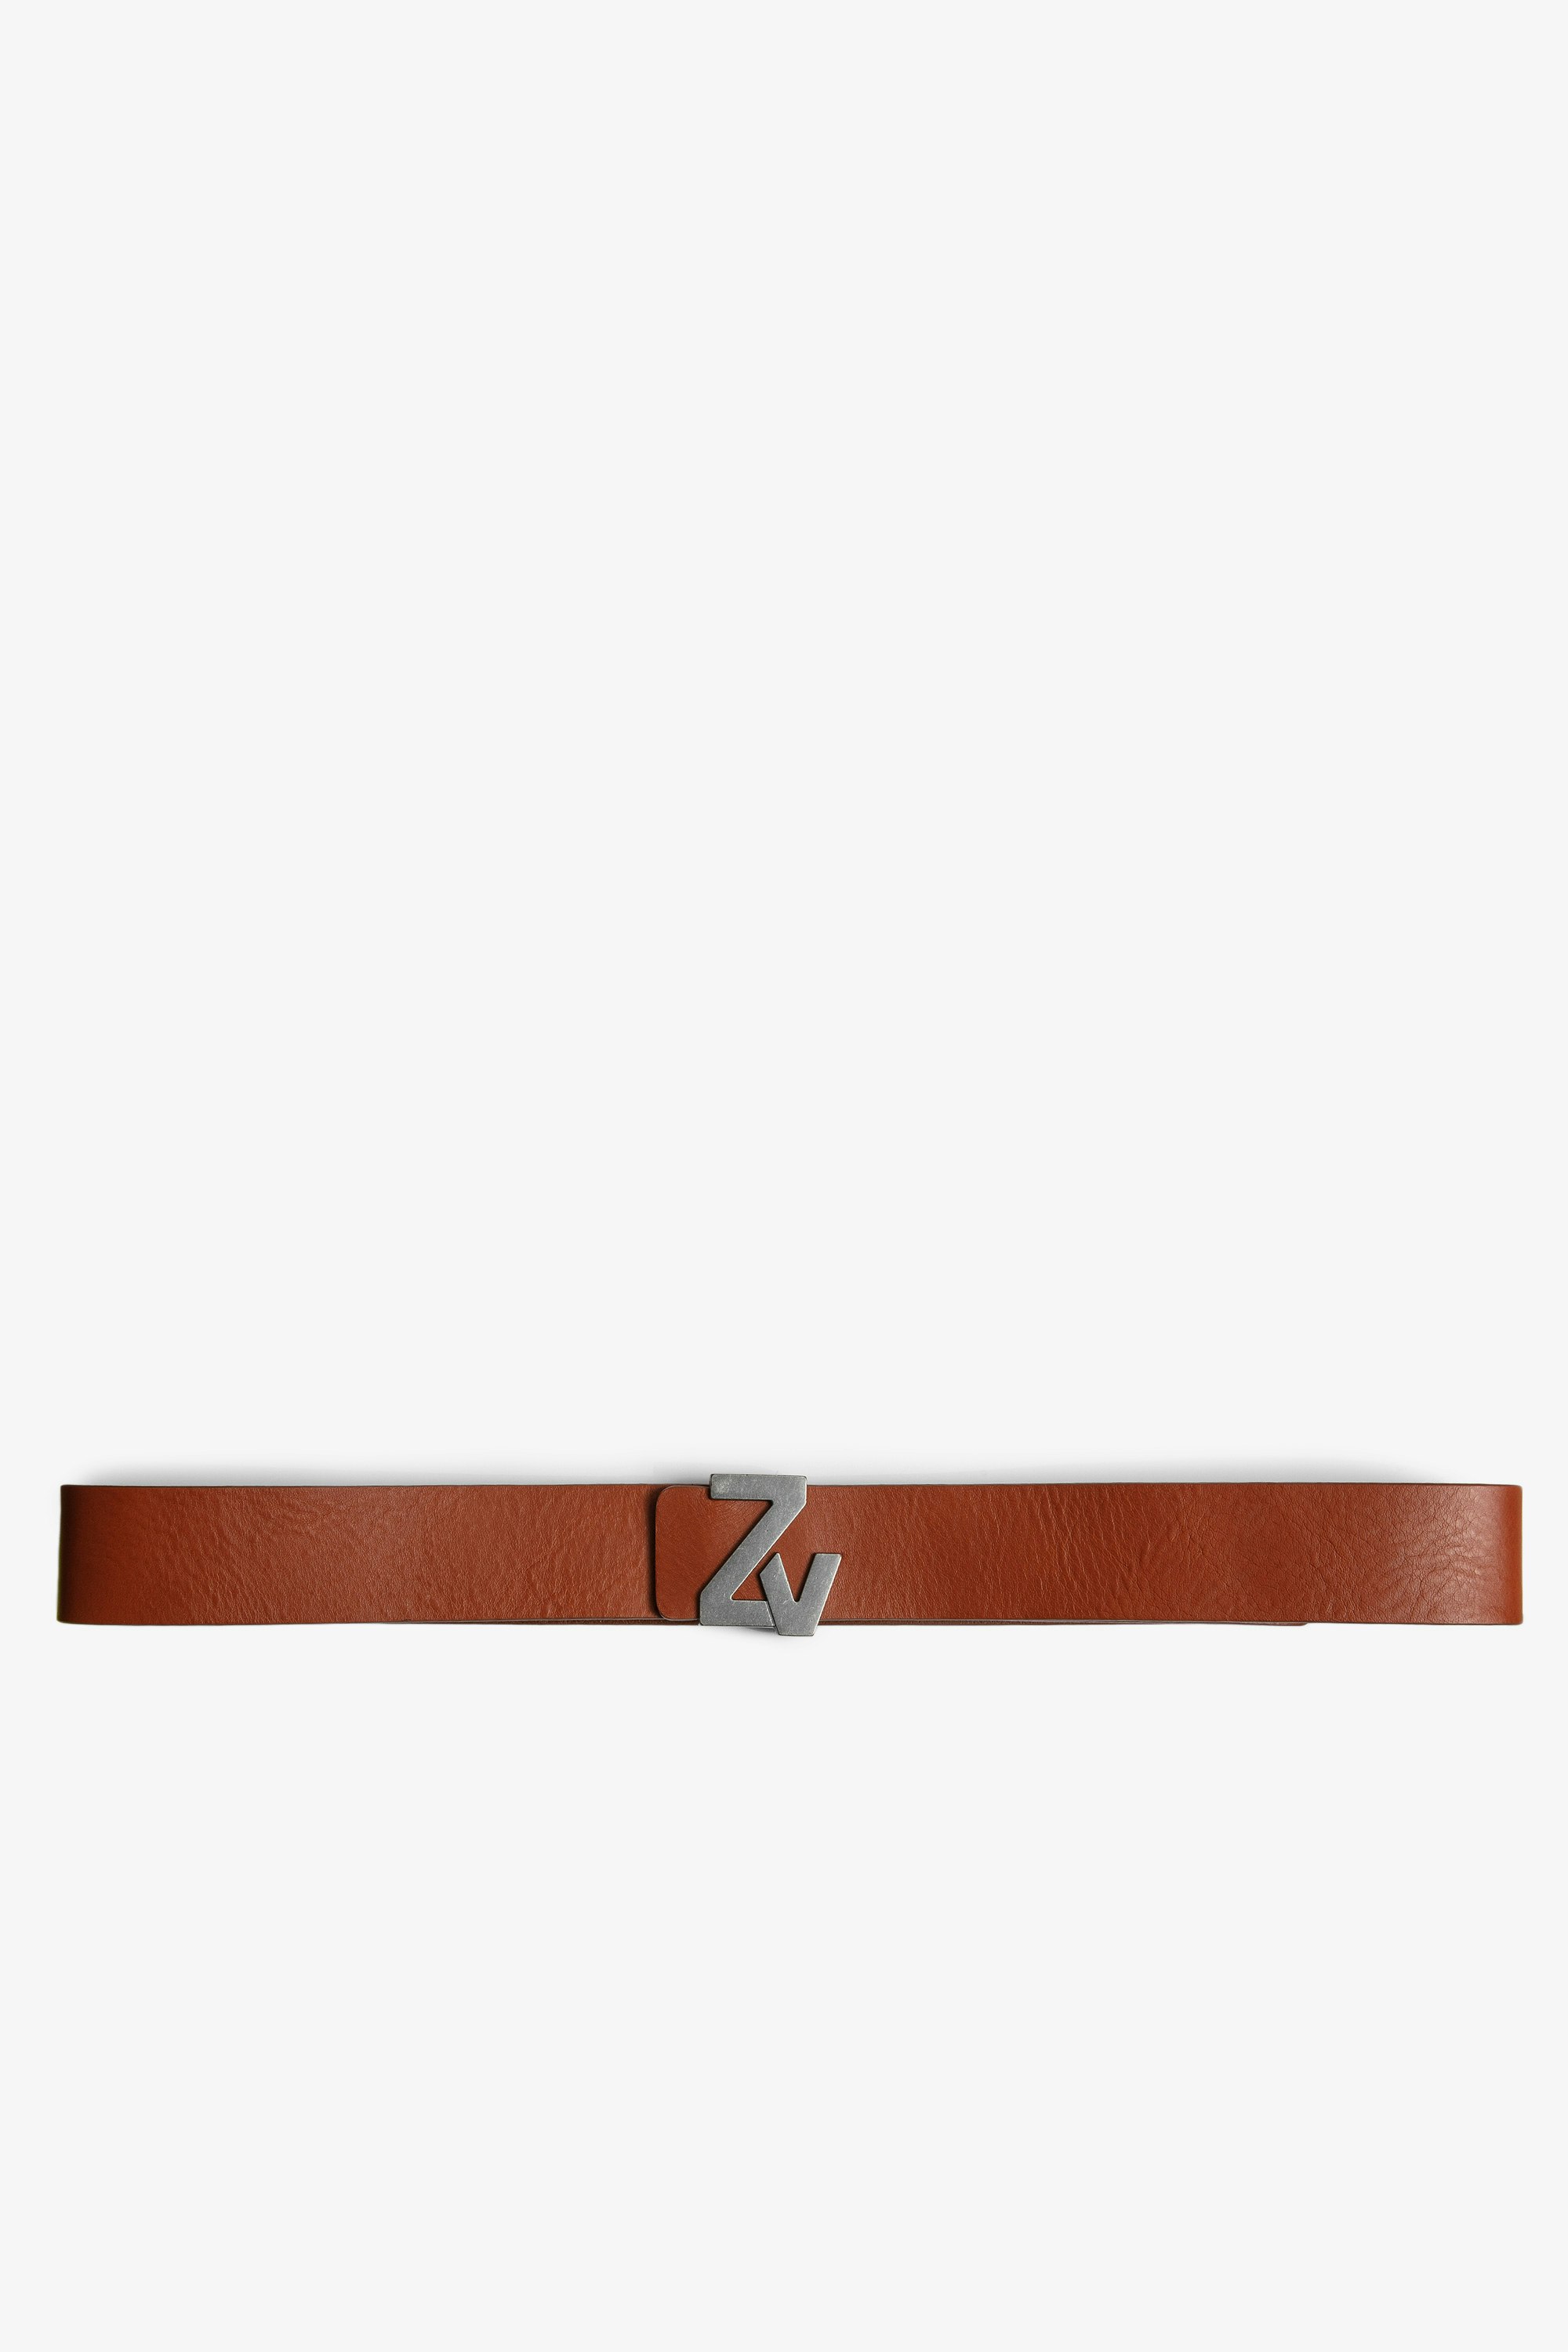 ZV Initiale La ベルト レザー Men's cognac leather belt with ZV buckle